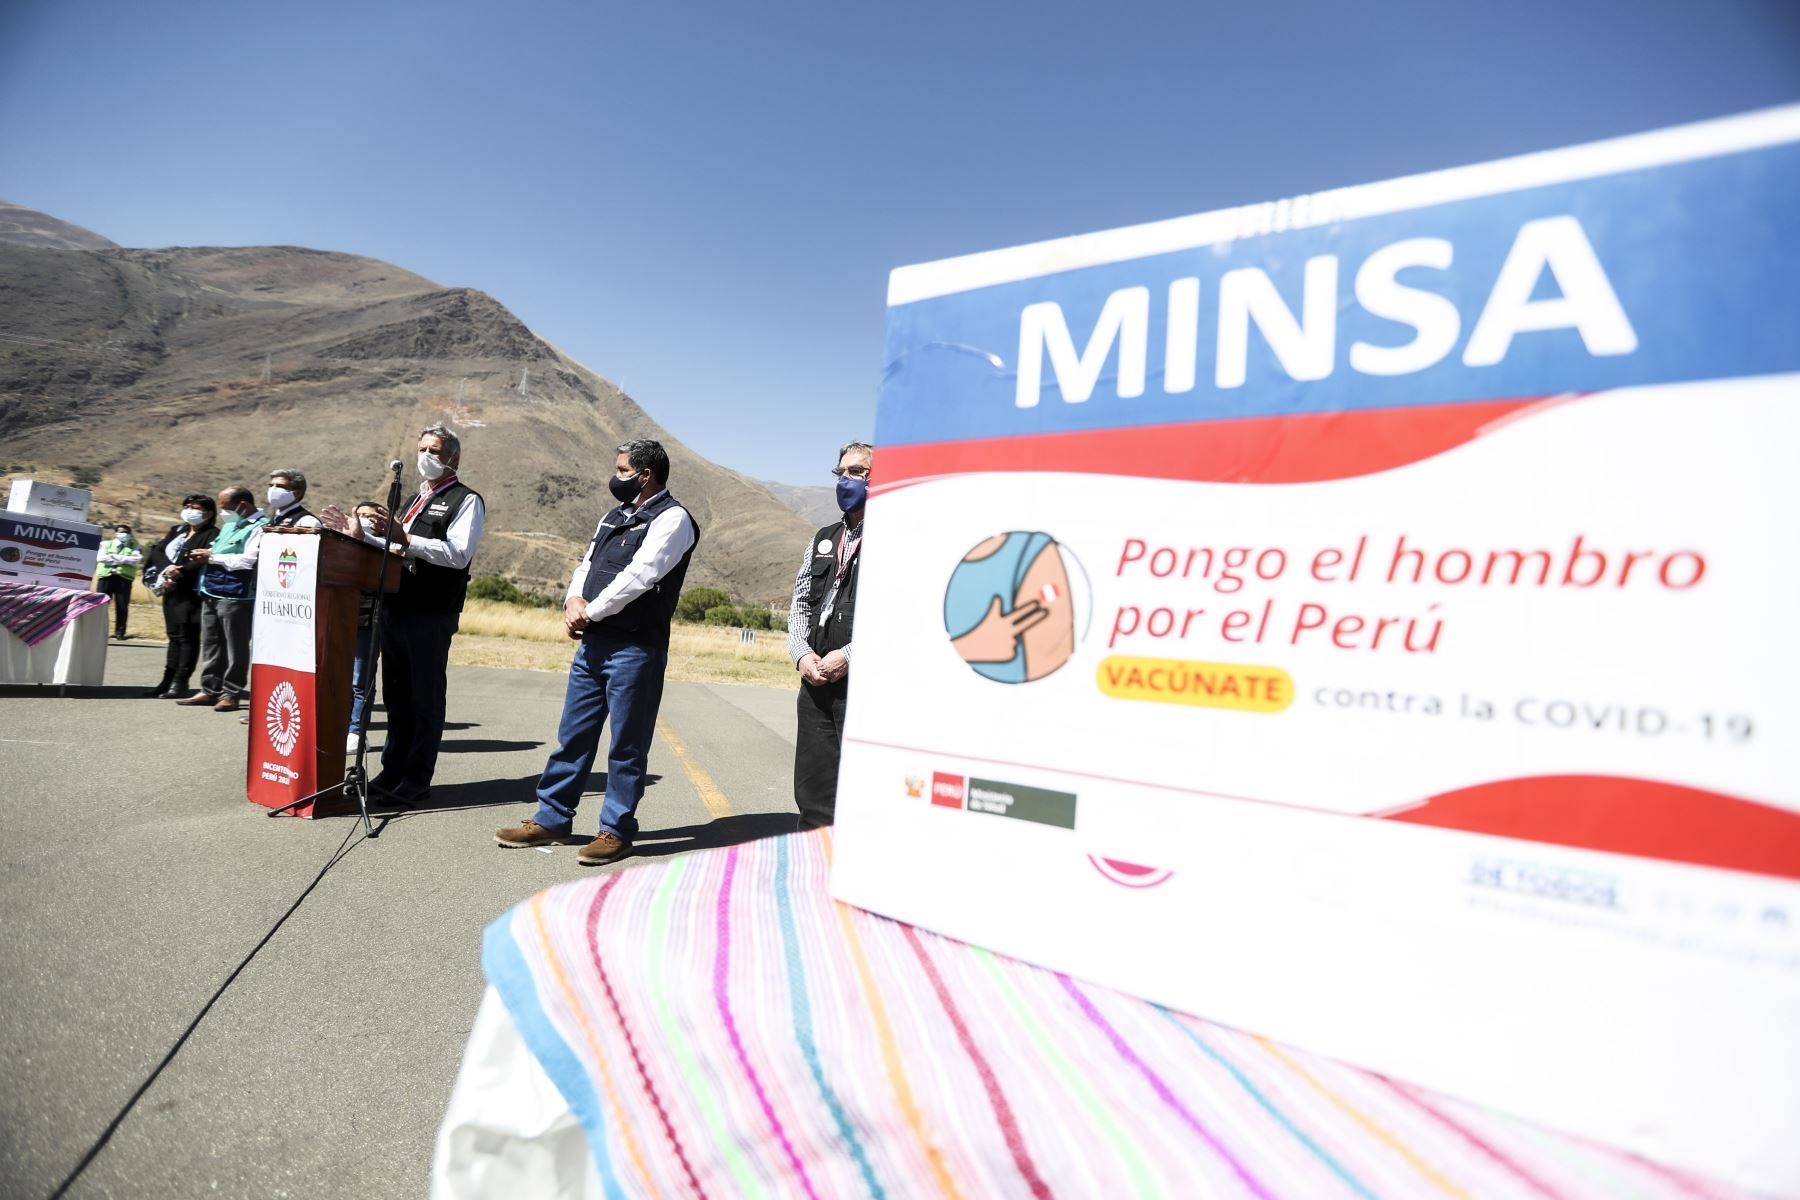 Presidente Francisco Sagasti viaja a la región Huánuco para realizar entrega de 9,360 dosis de vacunas Pfizer y 4,000 dosis de Sinopharm. Foto: ANDINA/Presidencia Perú